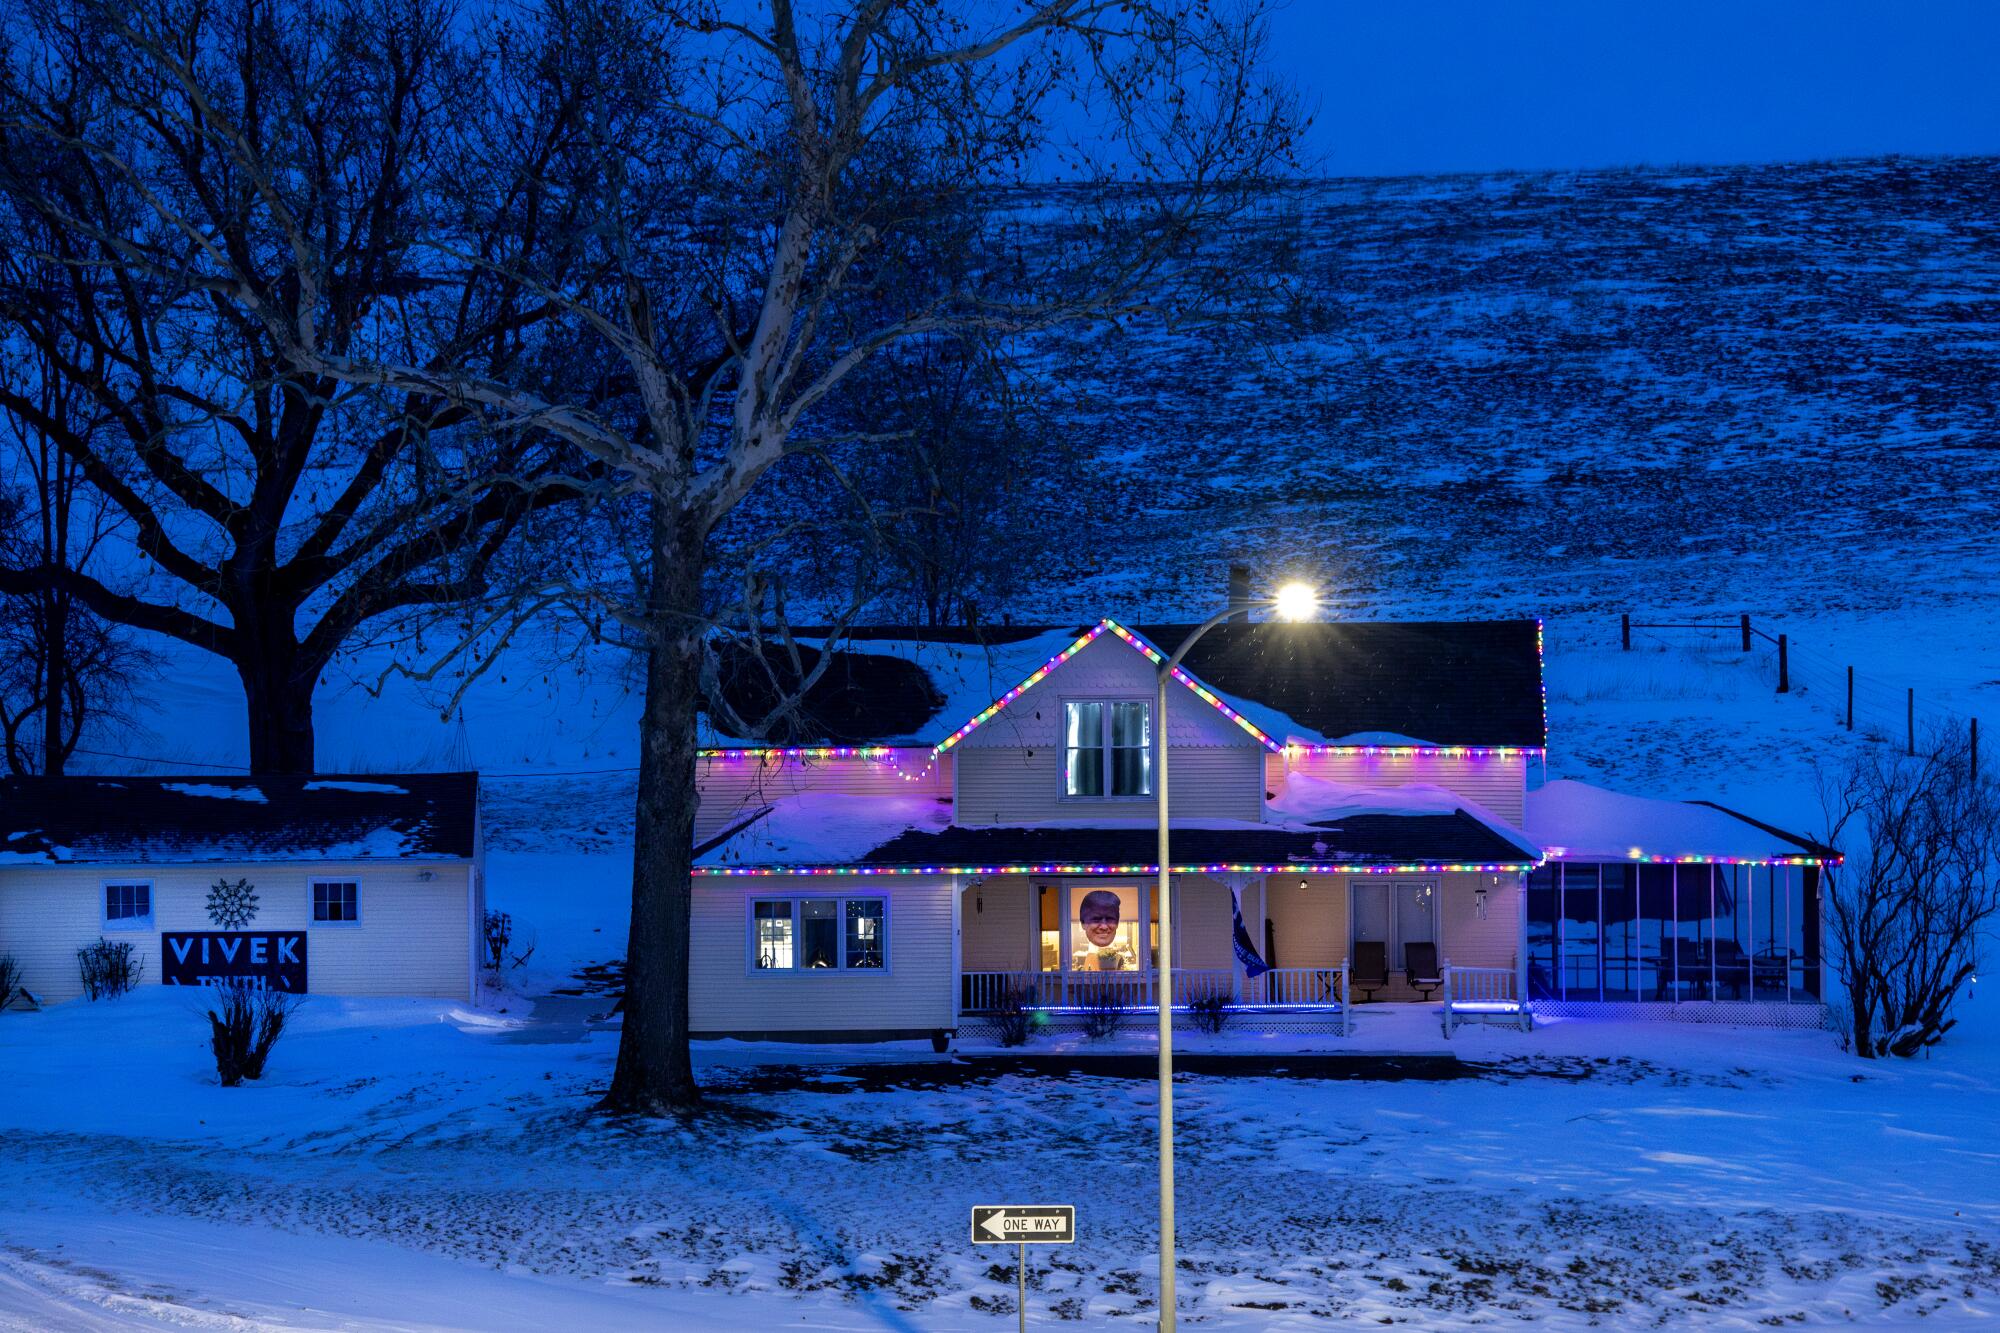 A rural home near a snowy hill 